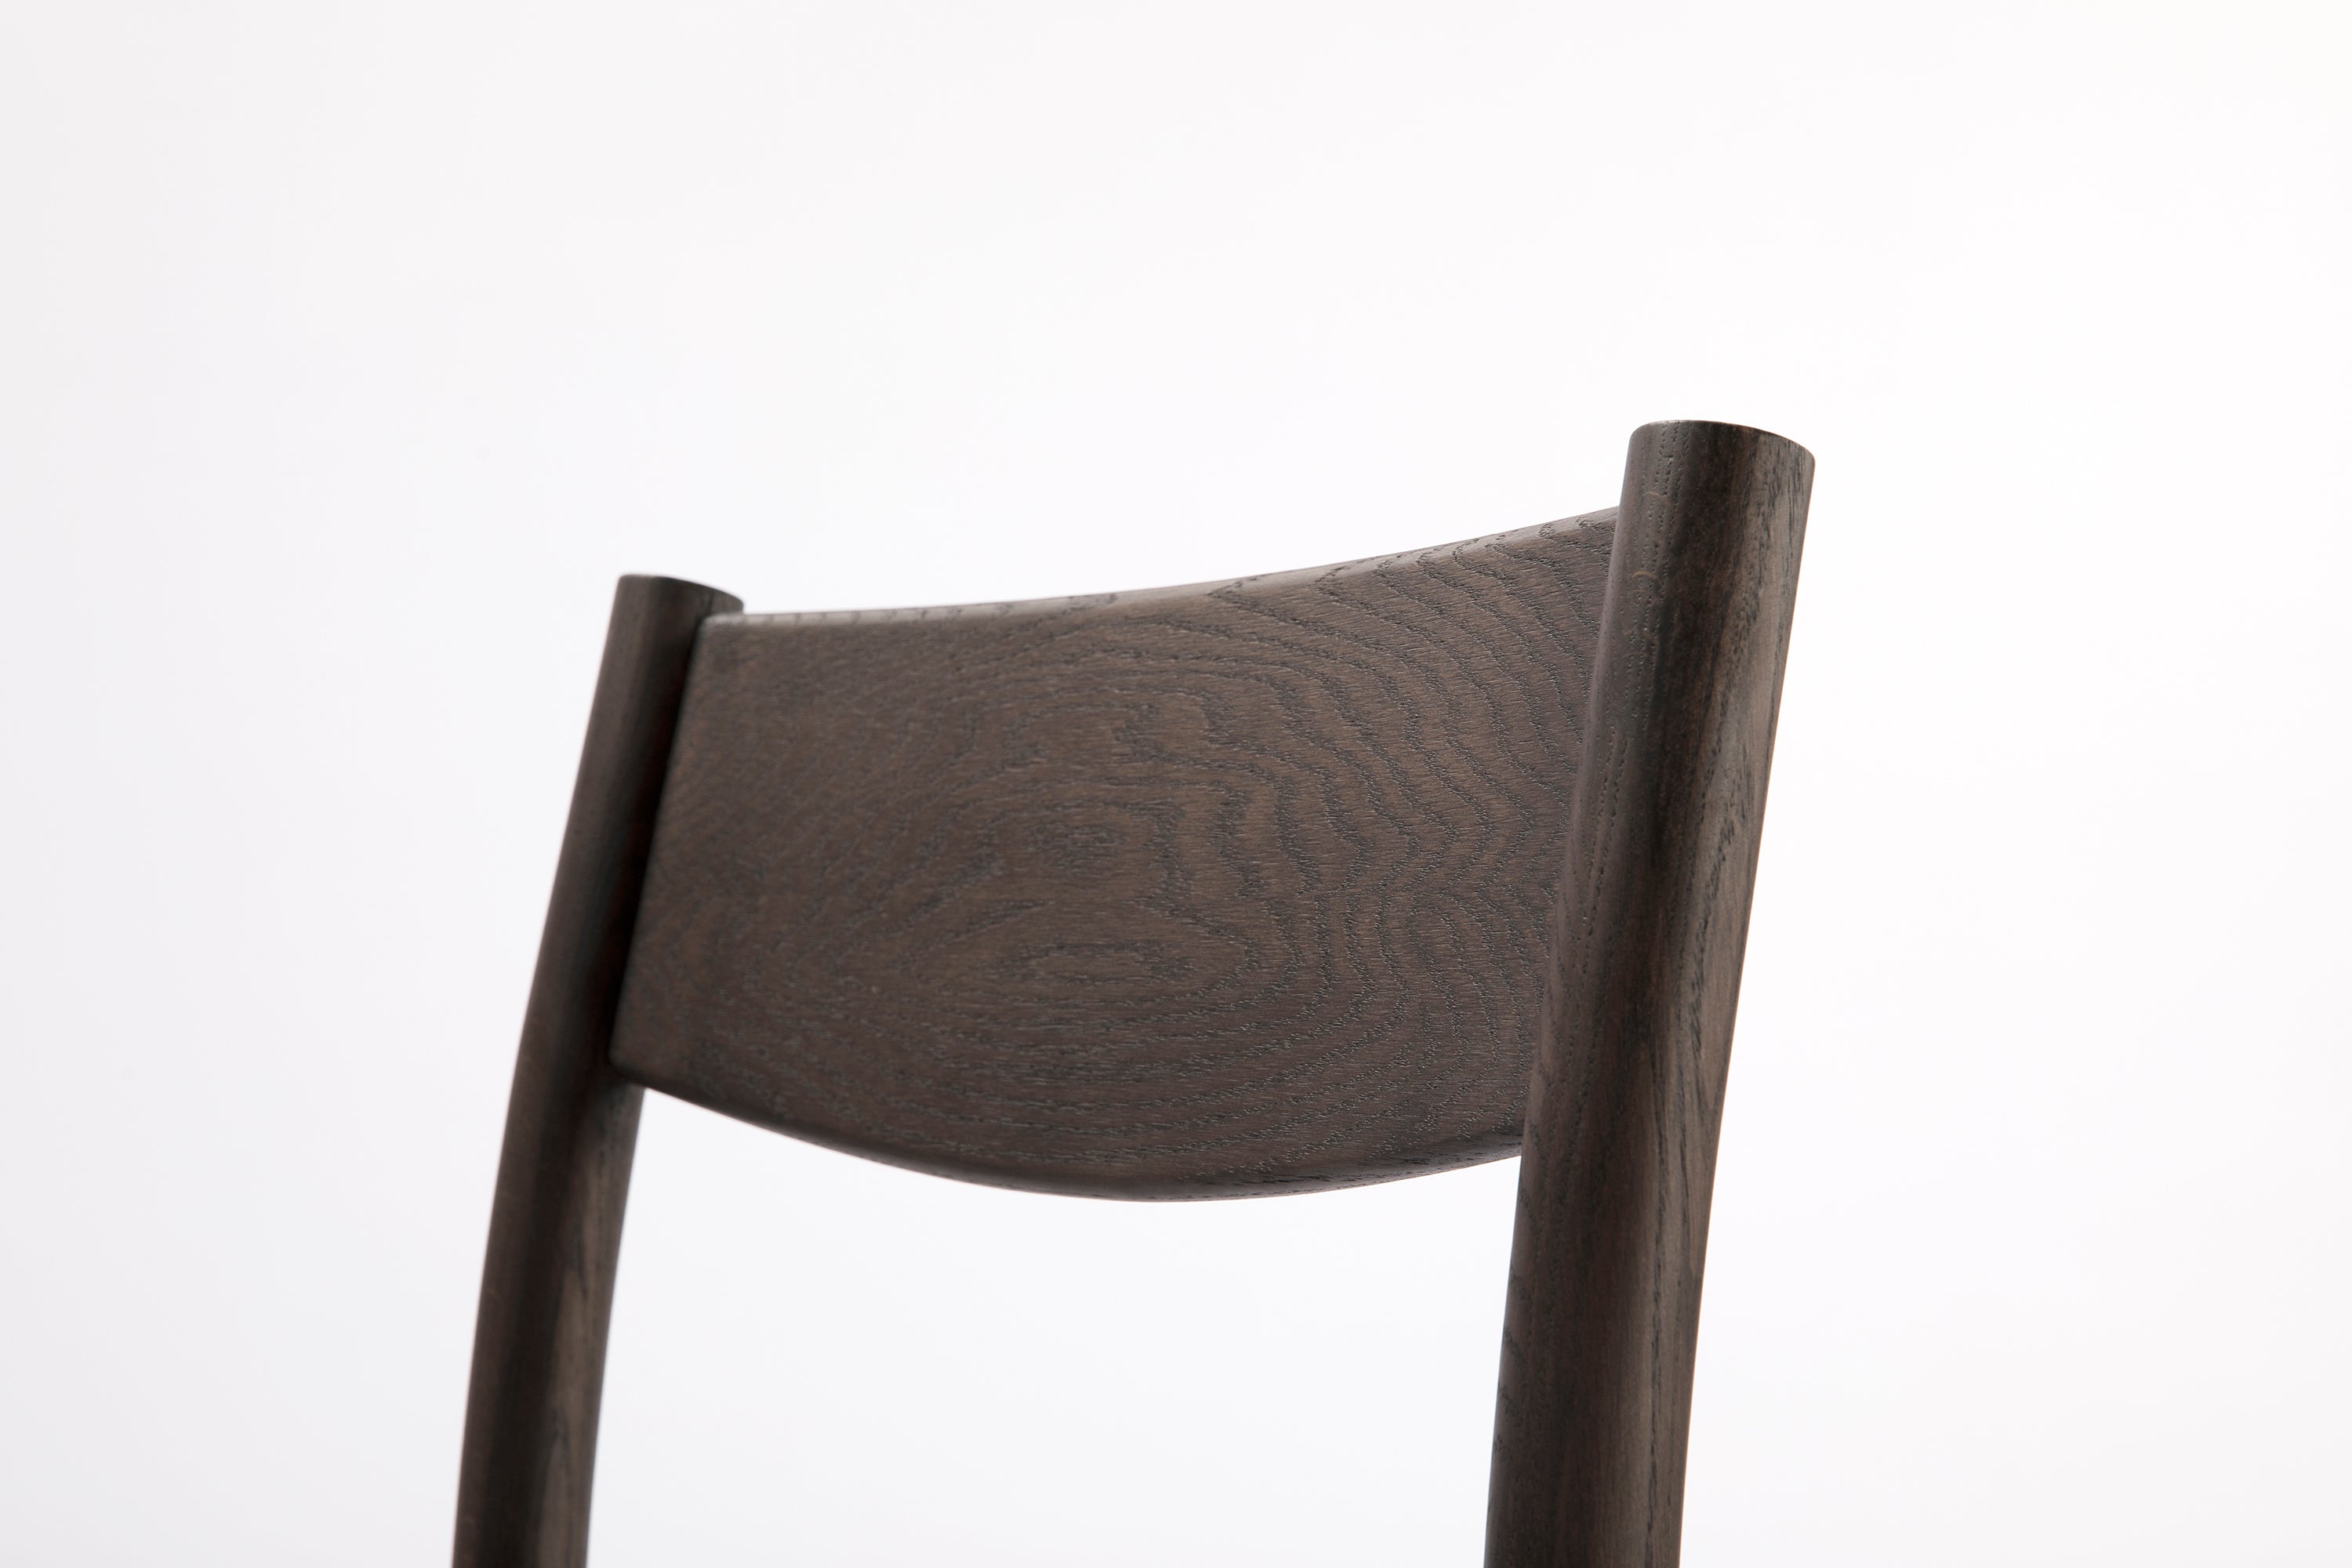 BOUNCE CHAIR Chair Ziinlife Modern Design Furniture Hong Kong 